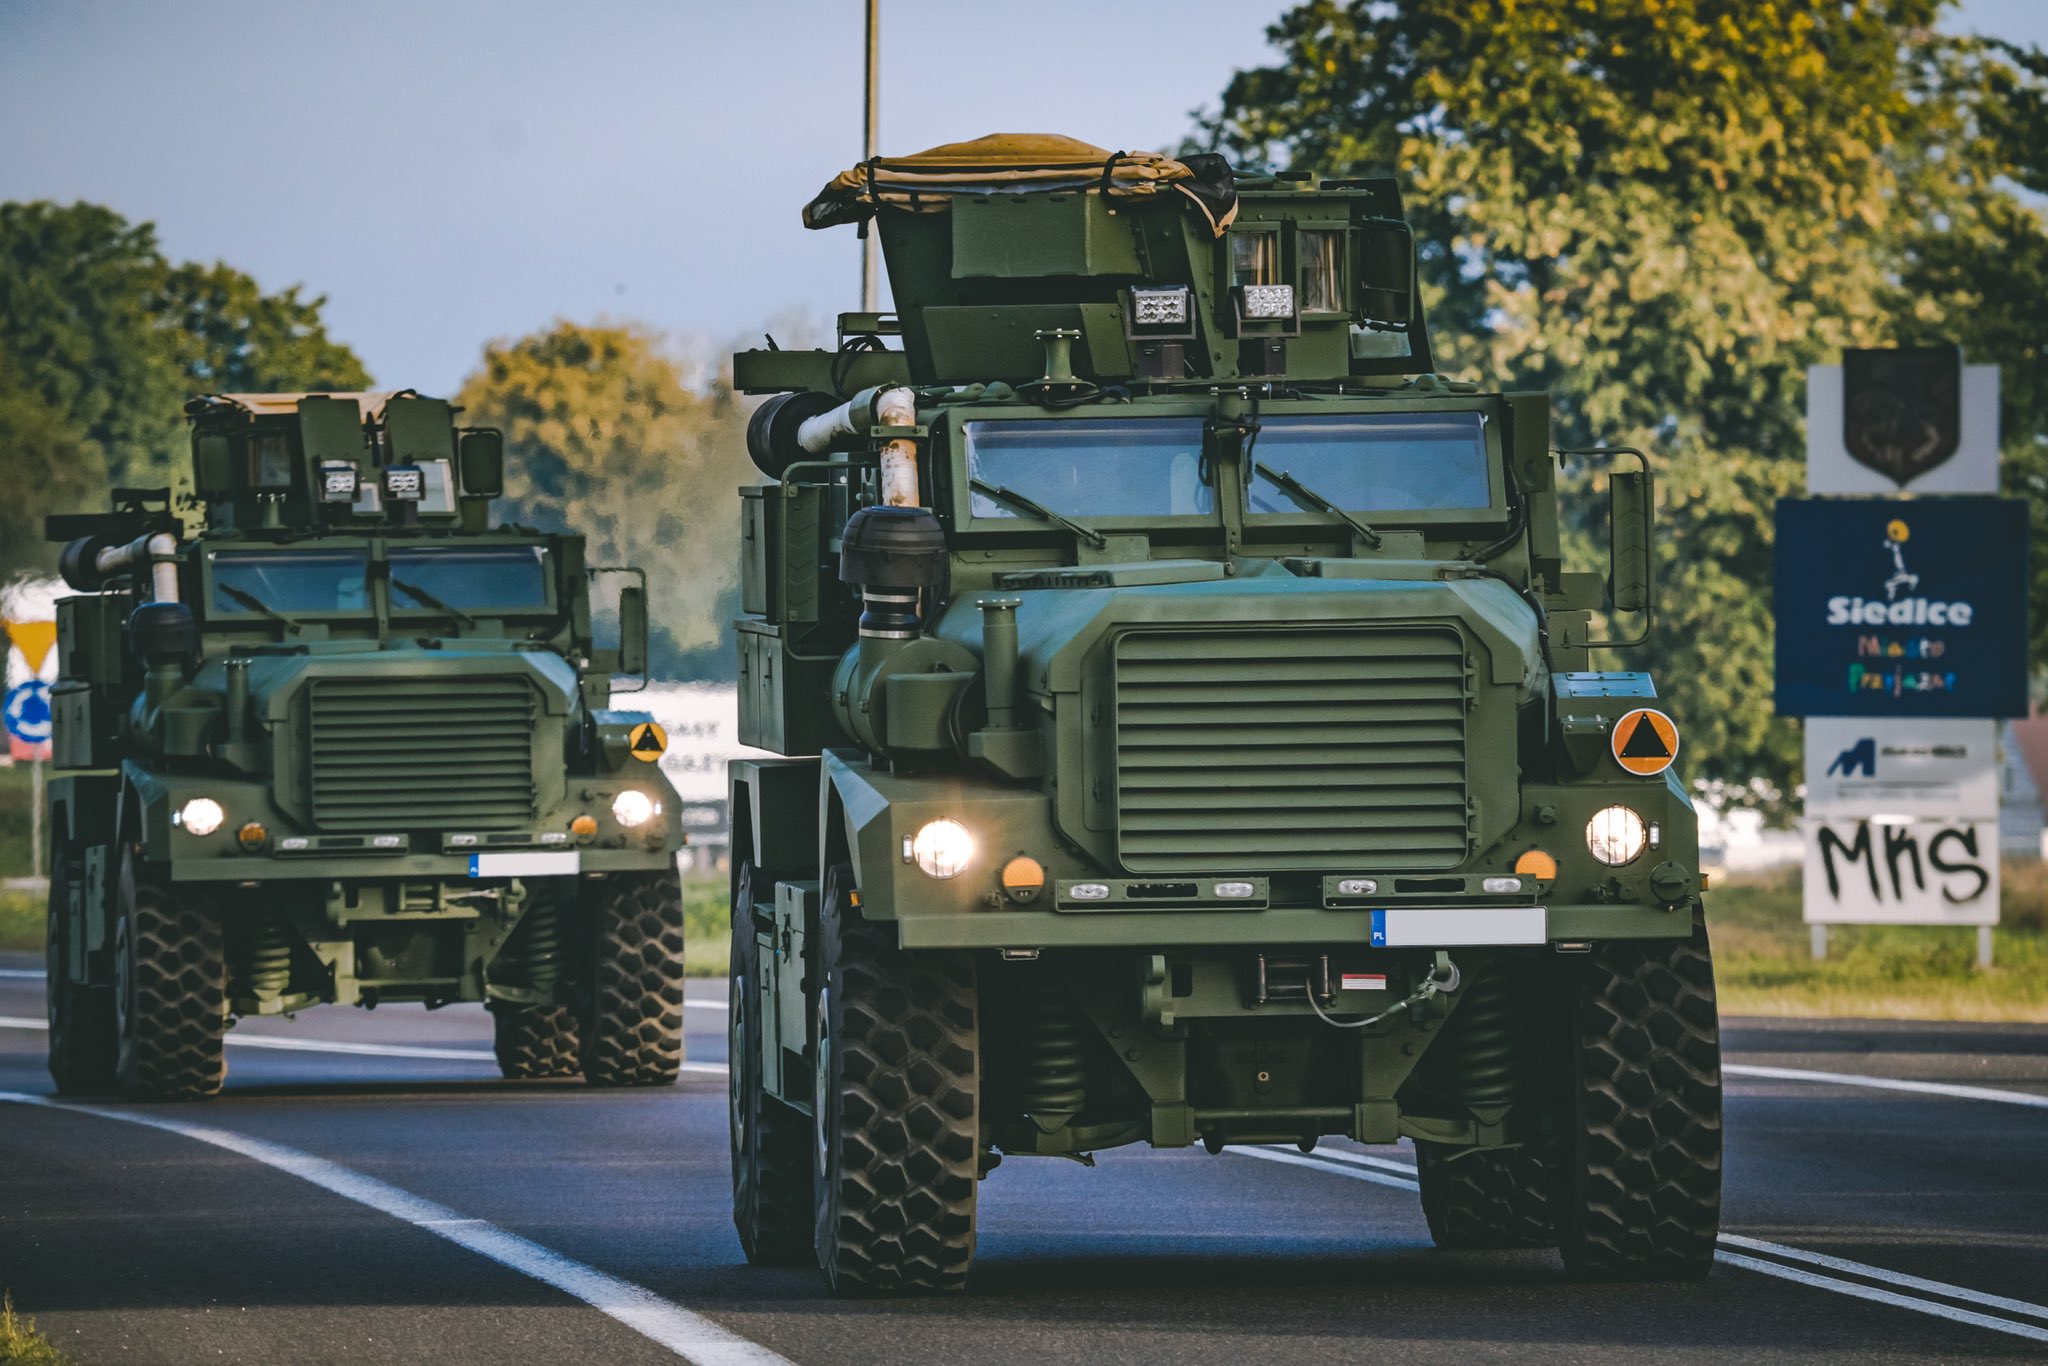 Wojsko polskie otrzymało 26 pojazdów opancerzonych Cougar z ochroną przeciwminową